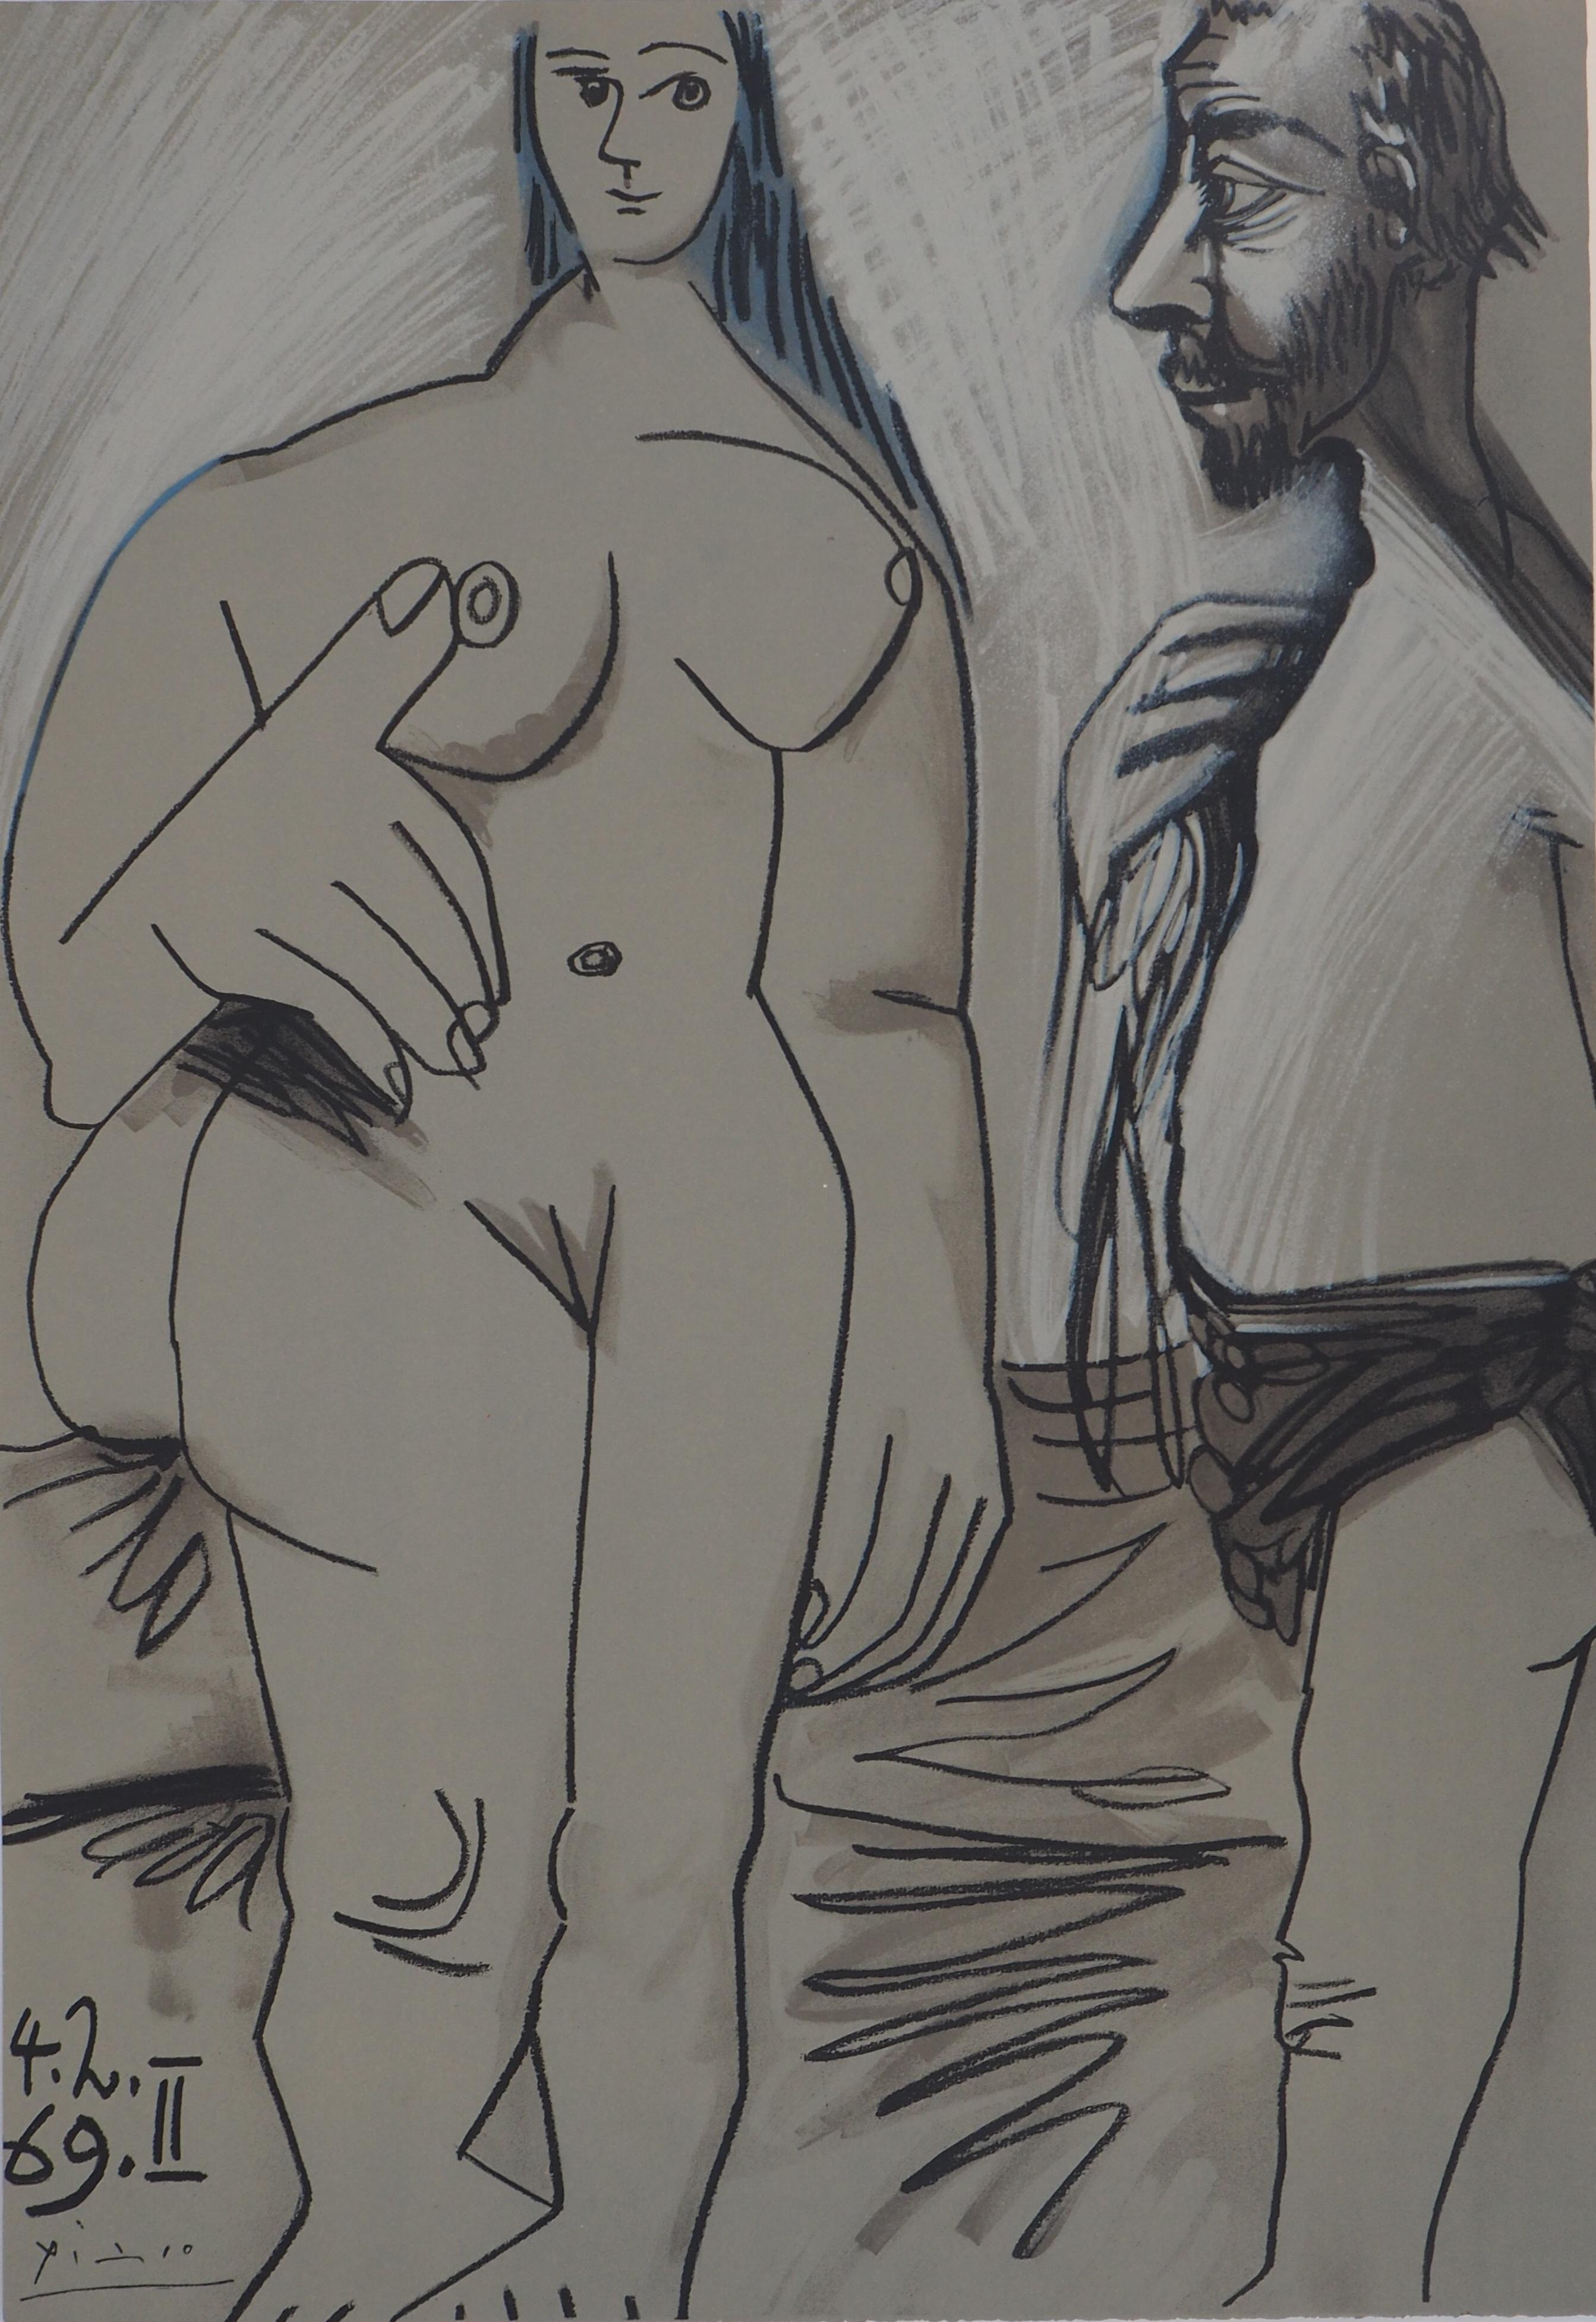 Modell und Maler – Lithographie (Mourlot 1971) (Kubismus), Print, von Pablo Picasso